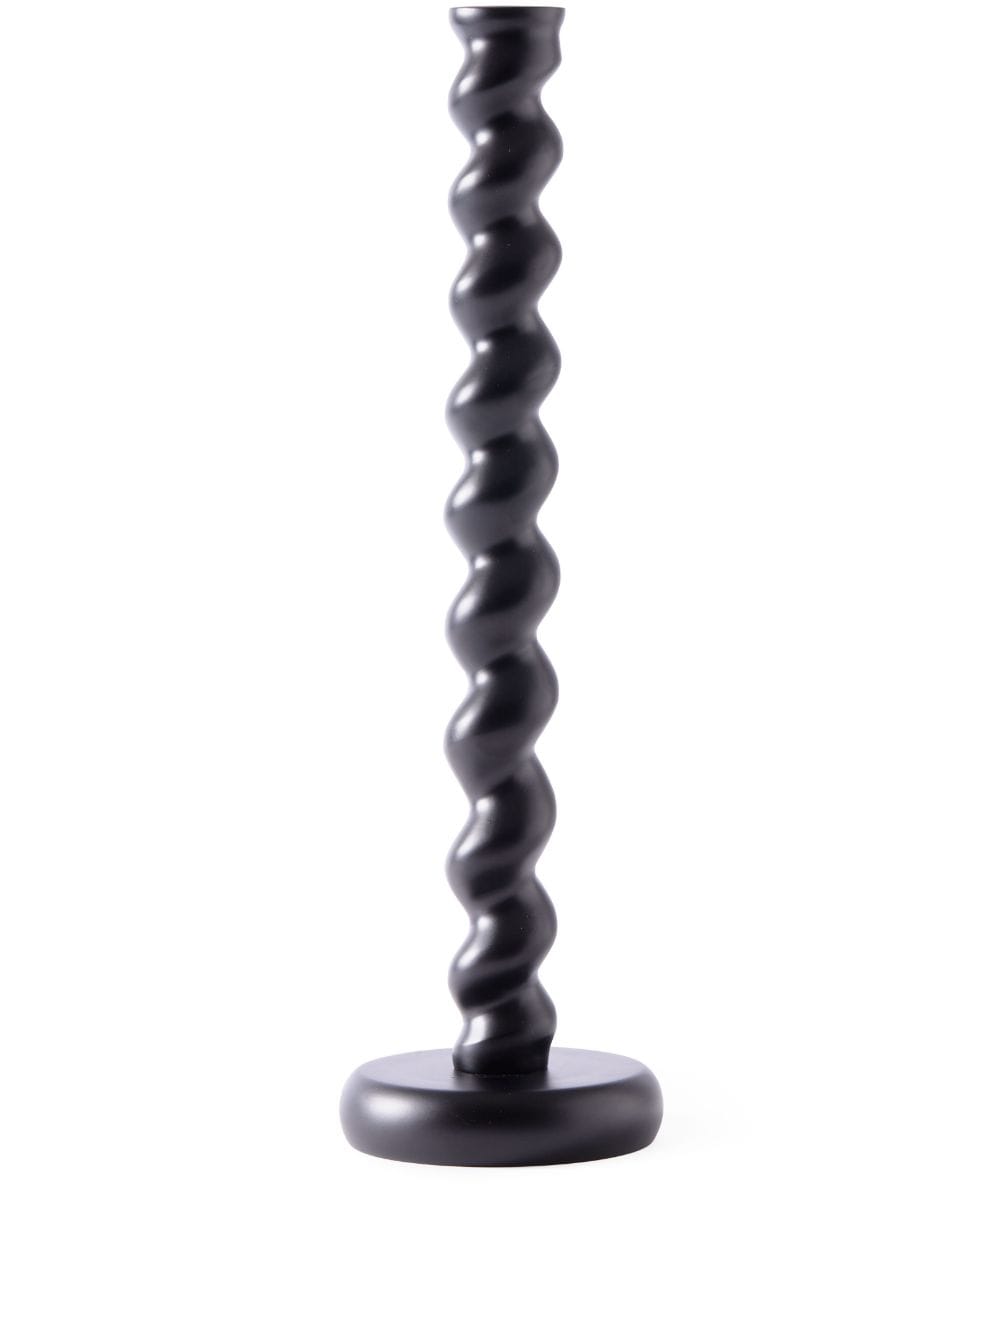 POLSPOTTEN XL Twister Kerzenhalter mit mattem Finish - Schwarz